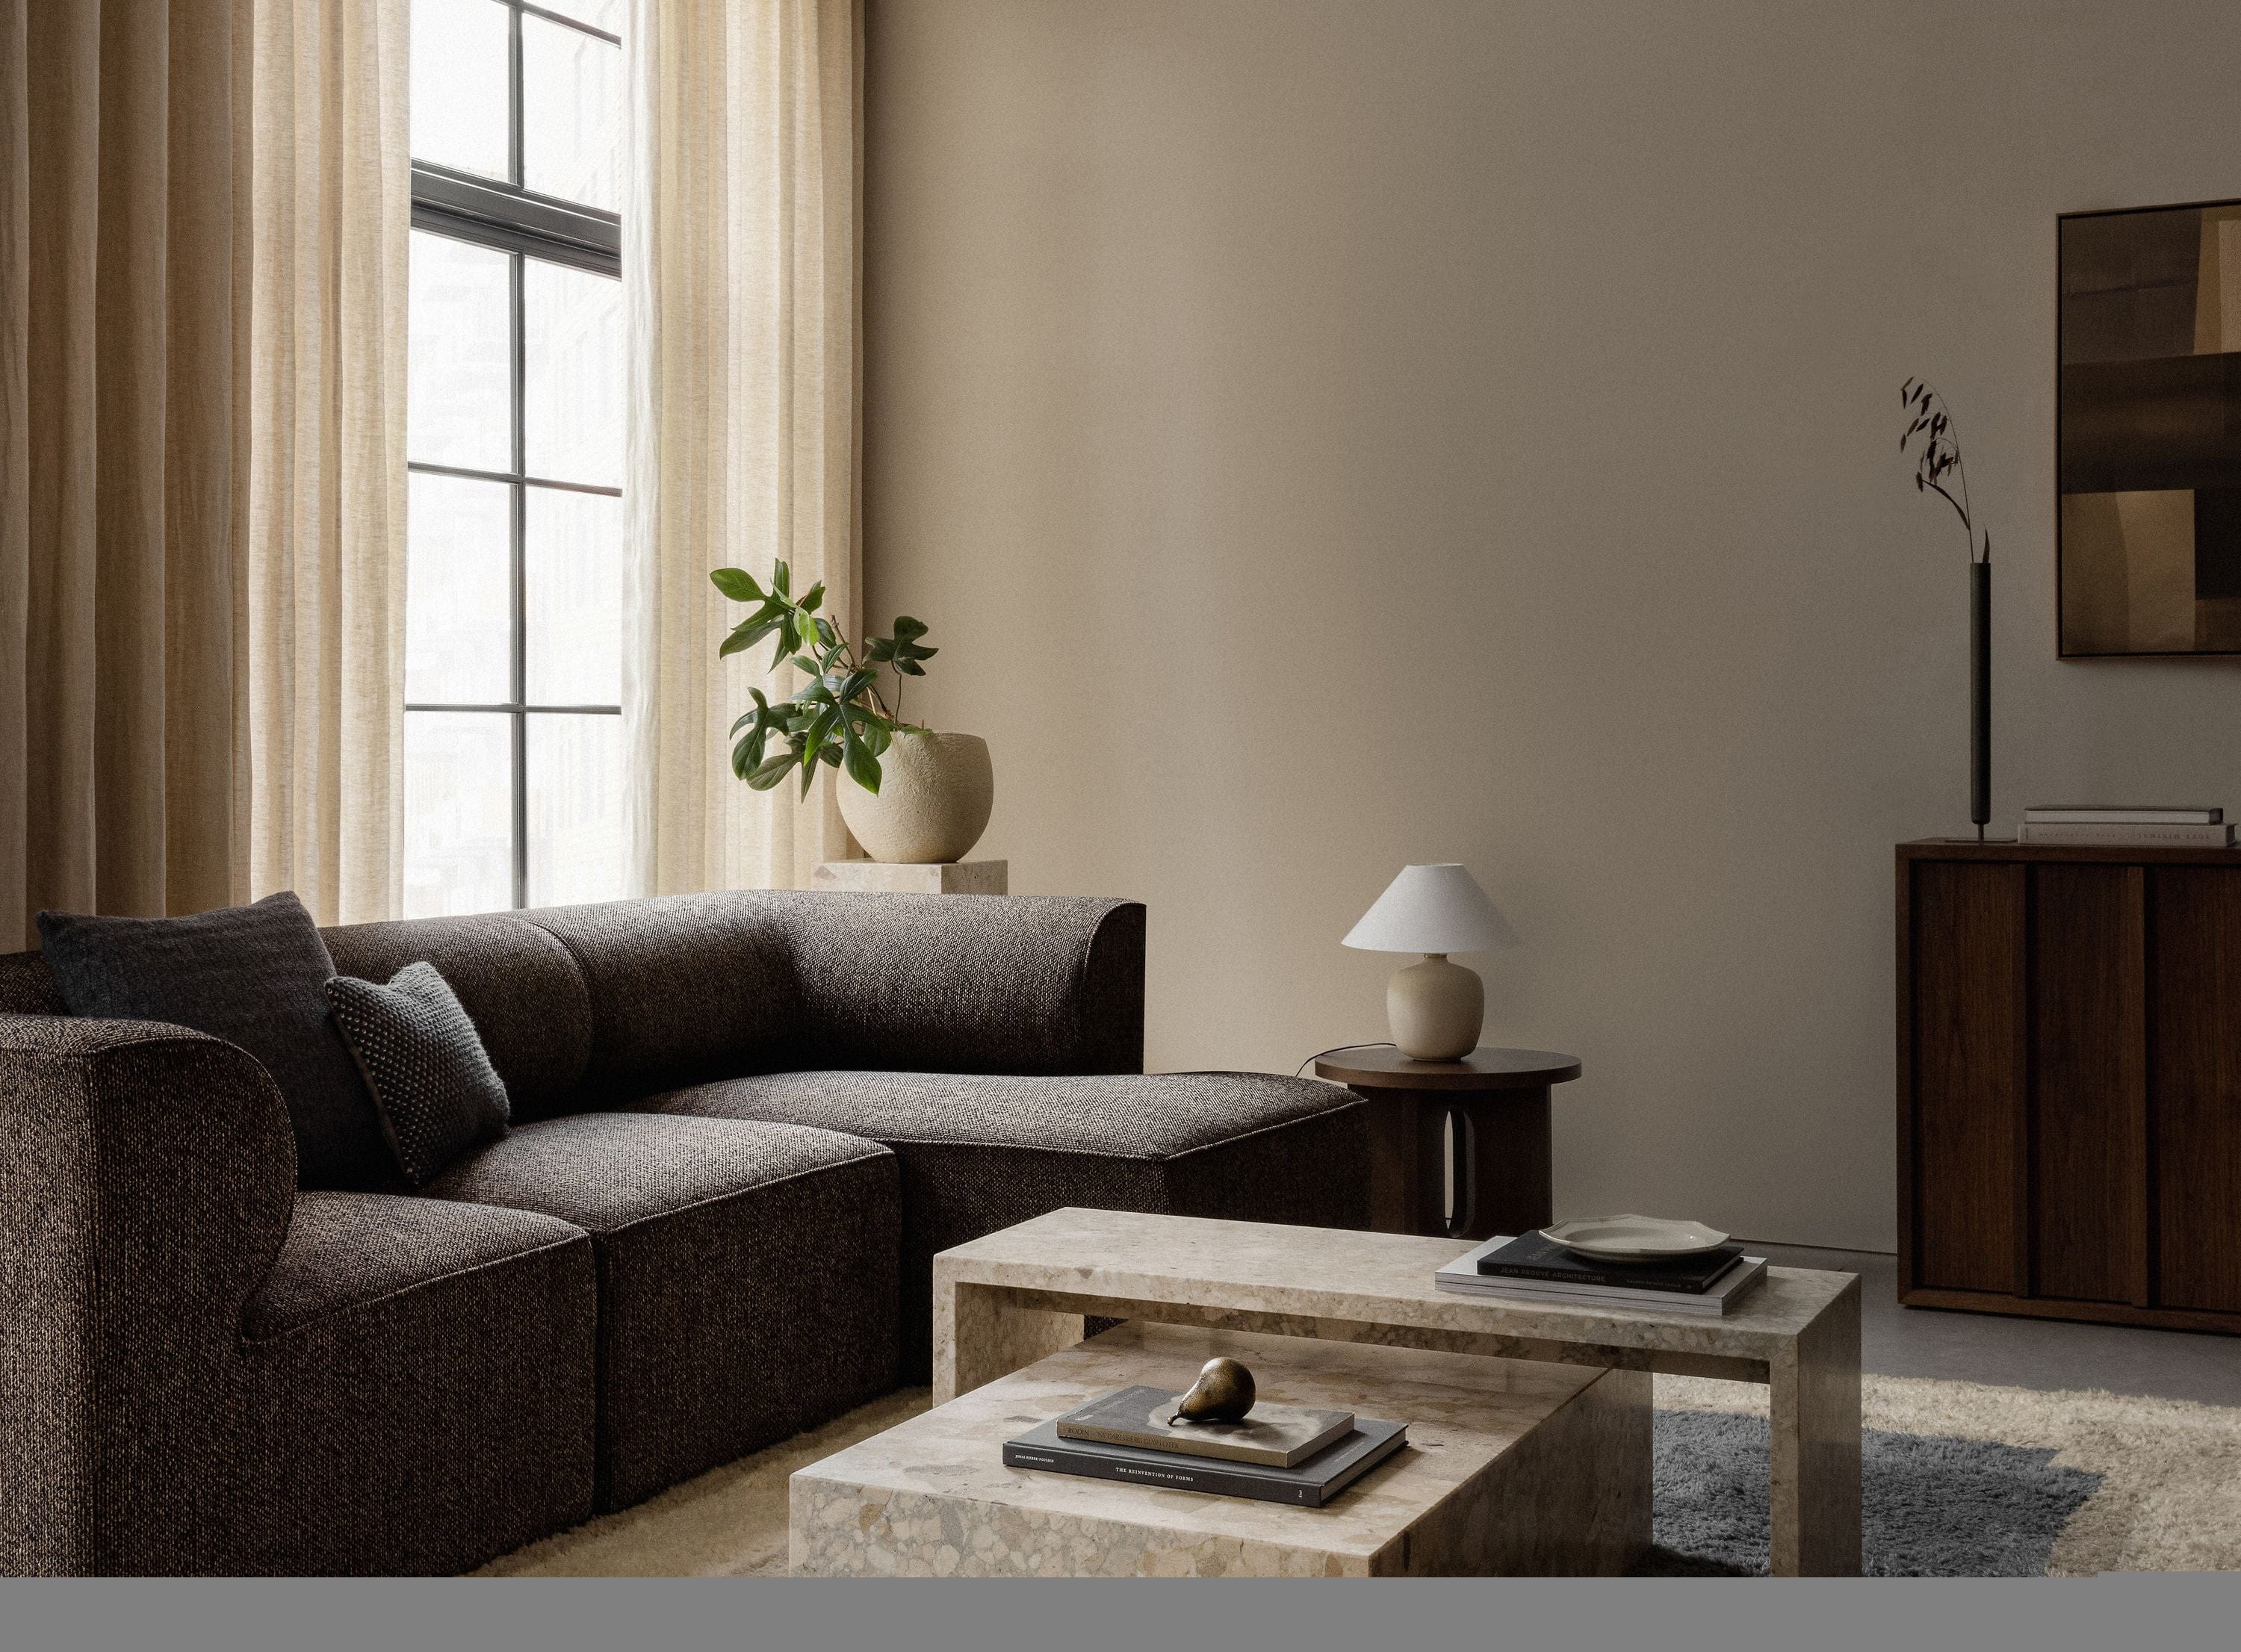 Audo Copenhagen EAVE Modulær polstret sofa hjørne til højre, Moss Orange, 86x172 cm